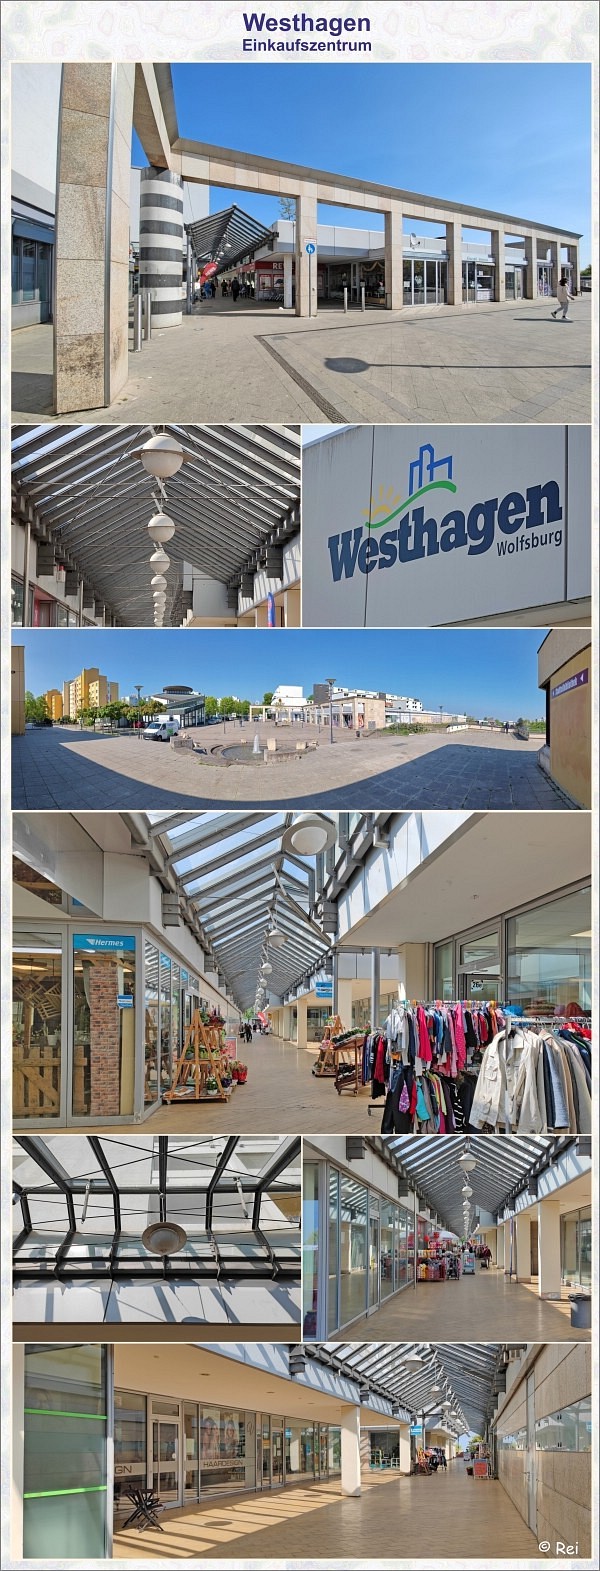 Westhagen Einkaufszentrum